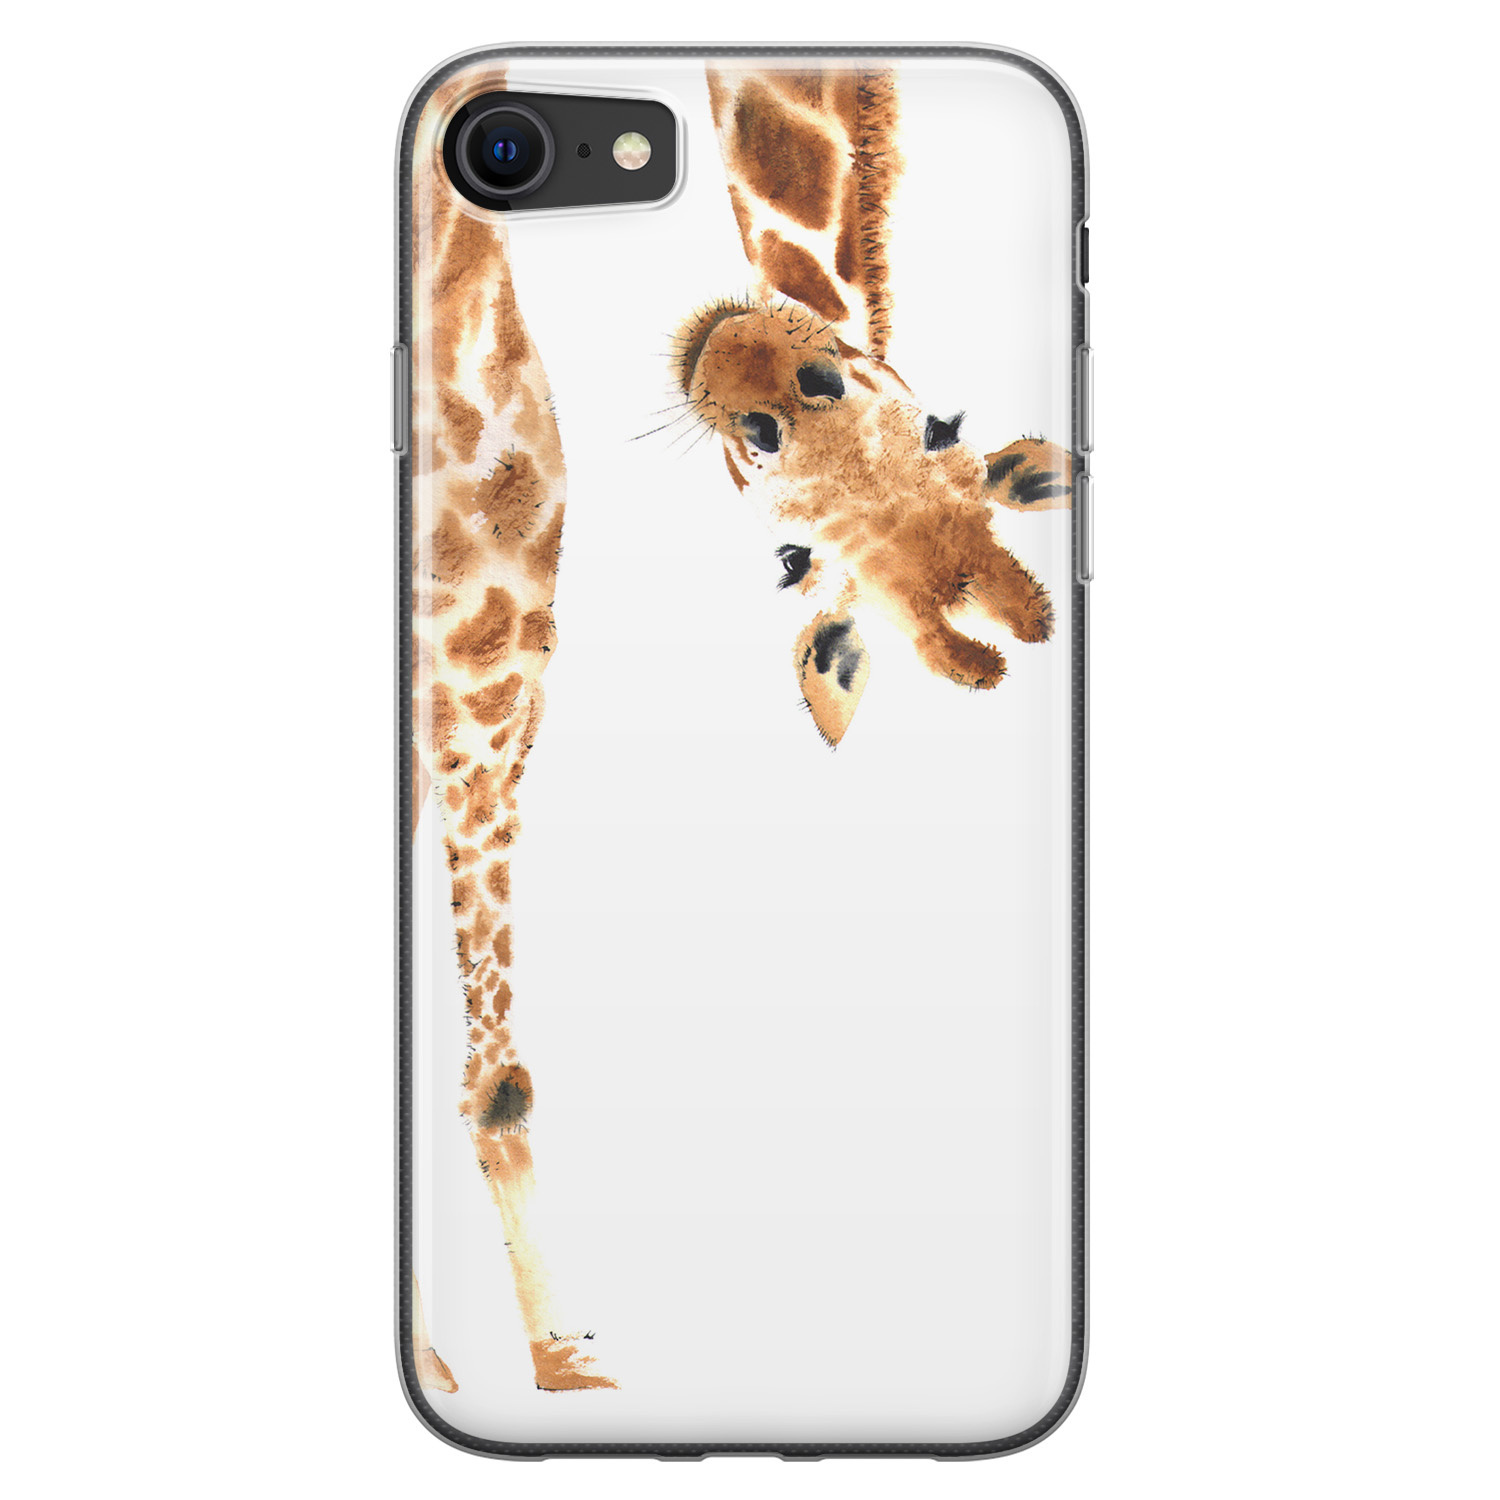 Voorkeur Analytisch Snikken Leuke Telefoonhoesjes iPhone 8/7 siliconen hoesje - Giraffe peekaboo -  Leuke Telefoonhoesjes